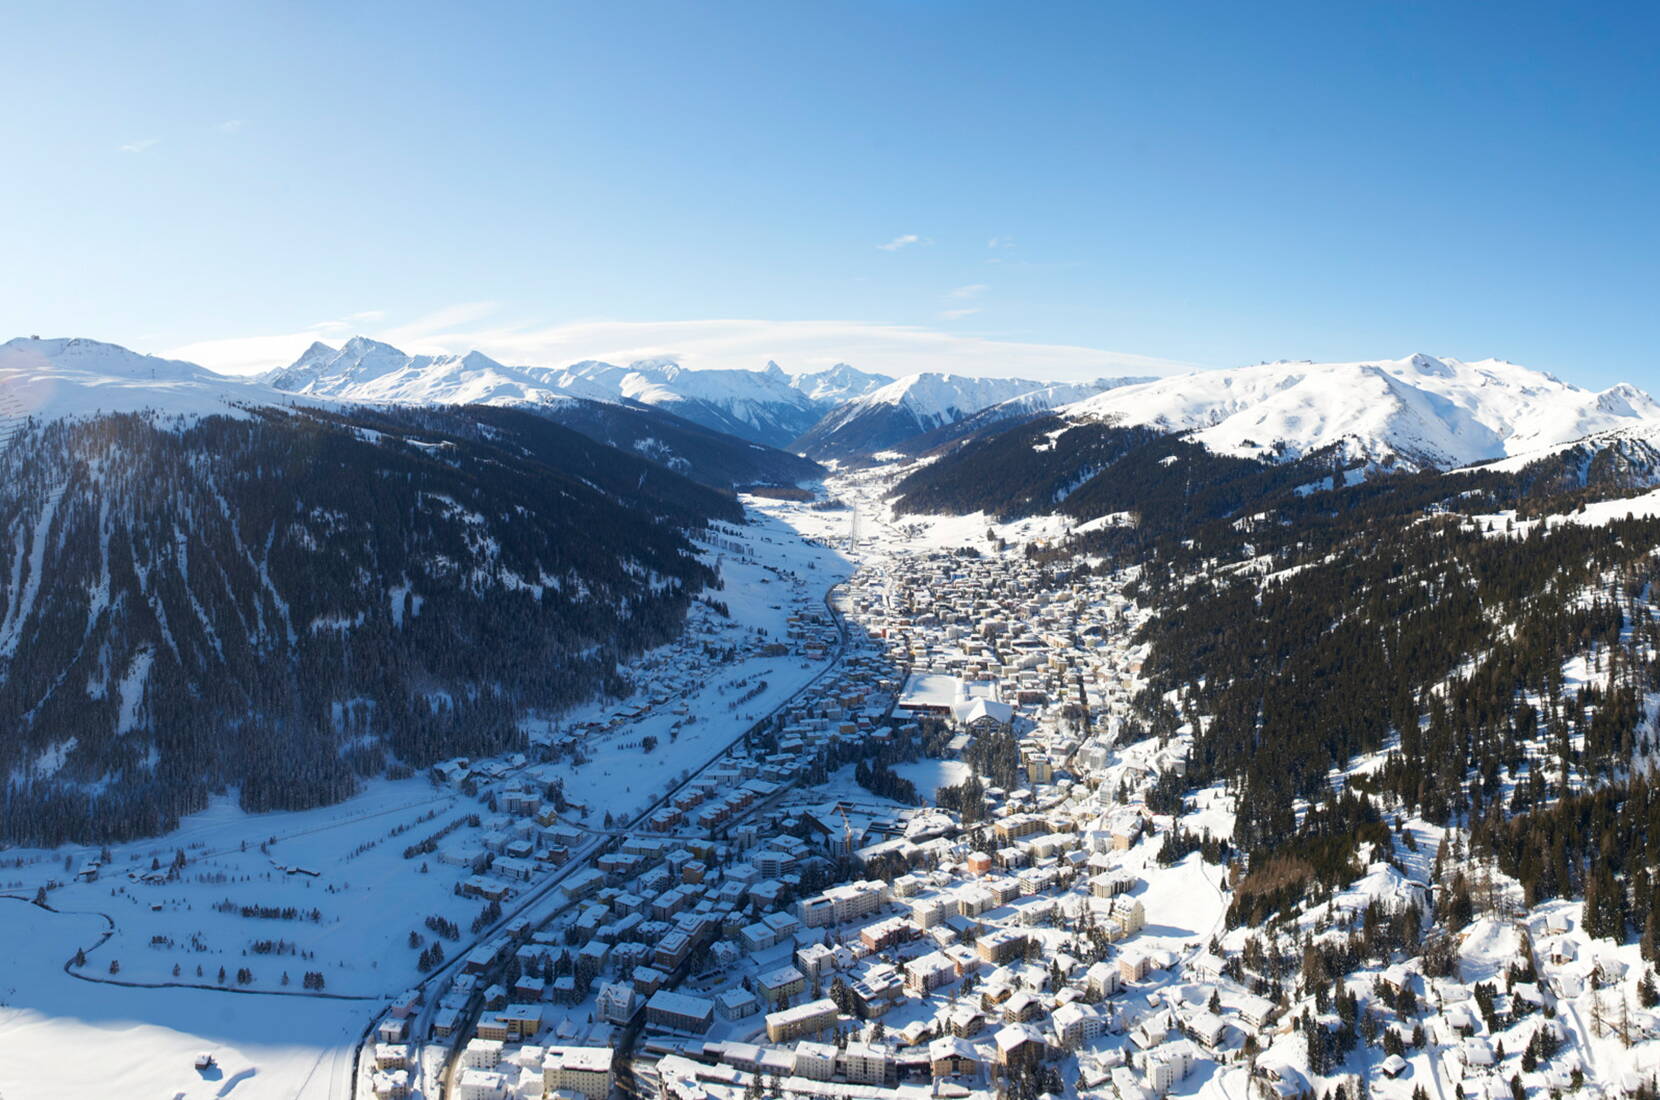 Familienausflug Schlitteln in Davos. Komm nach Davos und geniessen mit deiner Familie die zahlreichen Schlittelwege. Insgesamt stehen 29.4 Kilometer in der ganzen Destination Davos Klosters zur Verfügung.